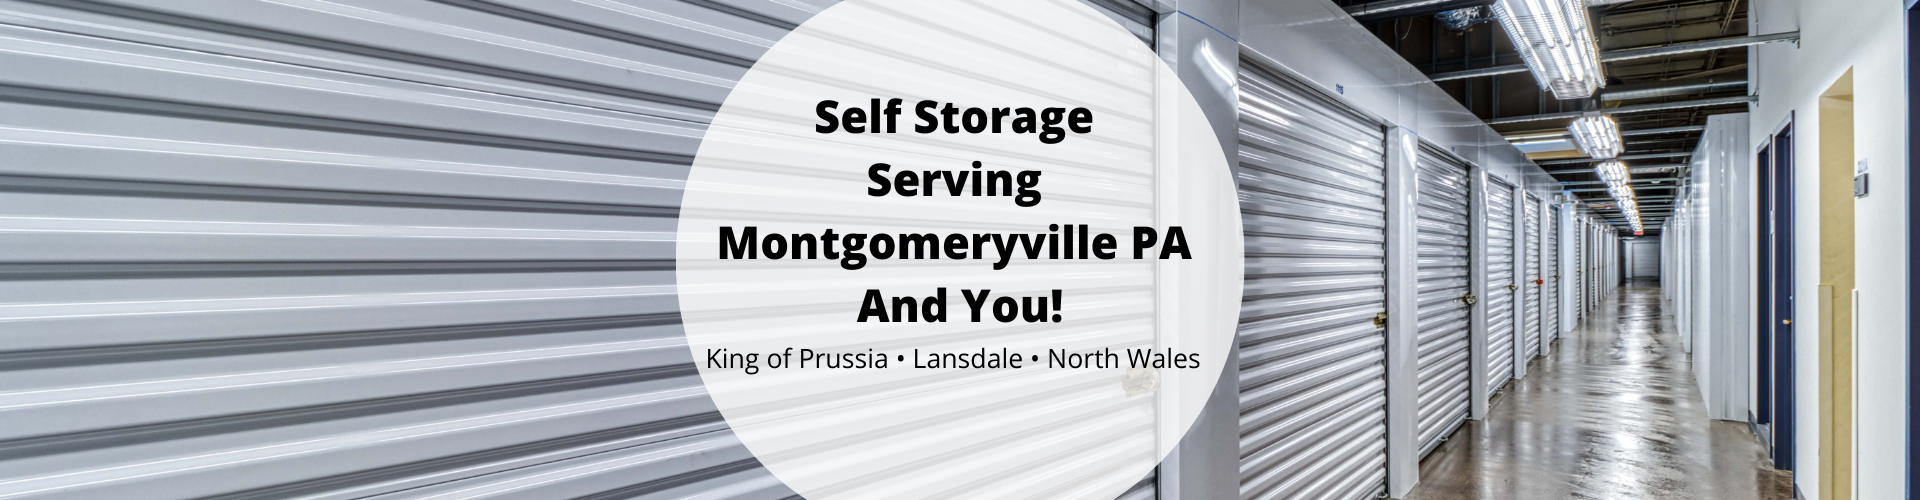 Self Storage Serving Montgomeryville PA